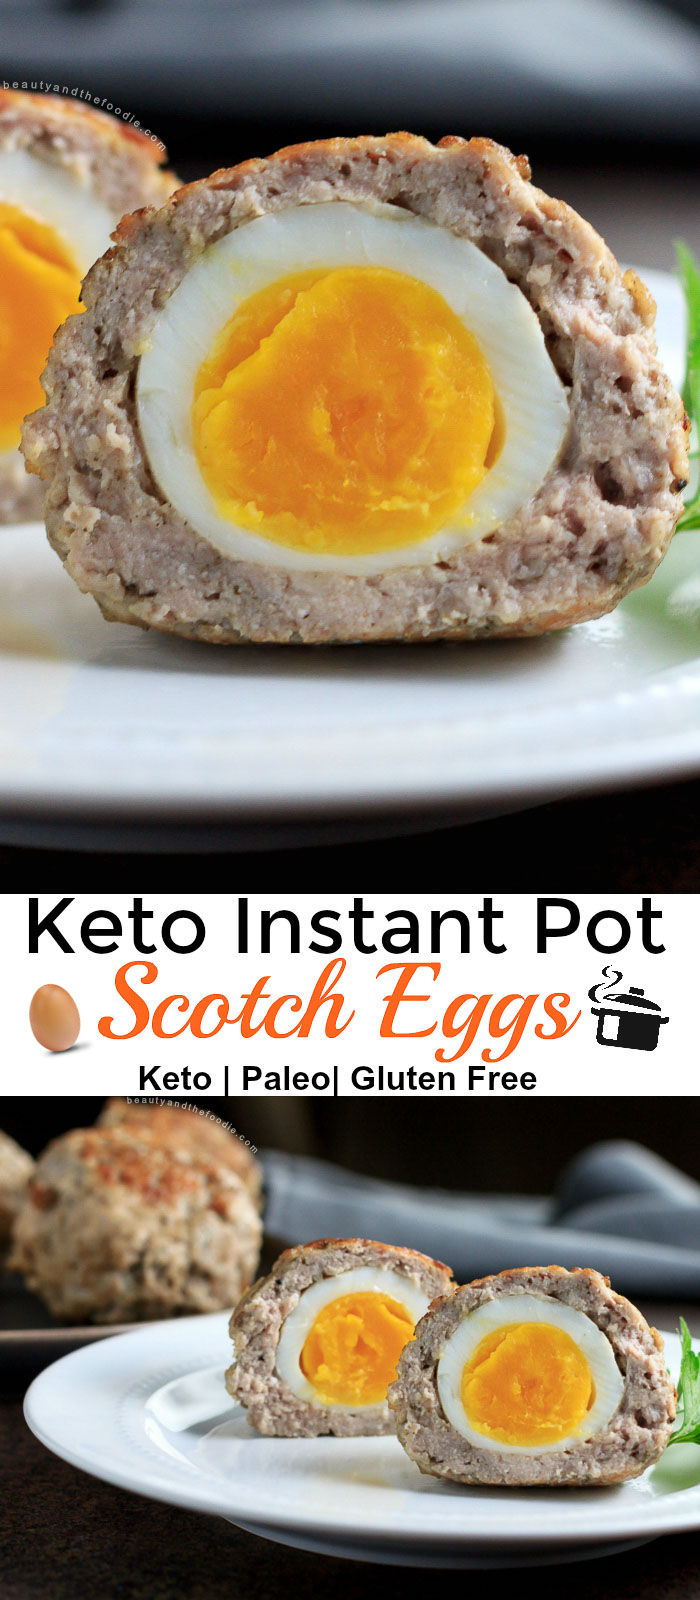 Instant Pot Keto Scotch Eggs